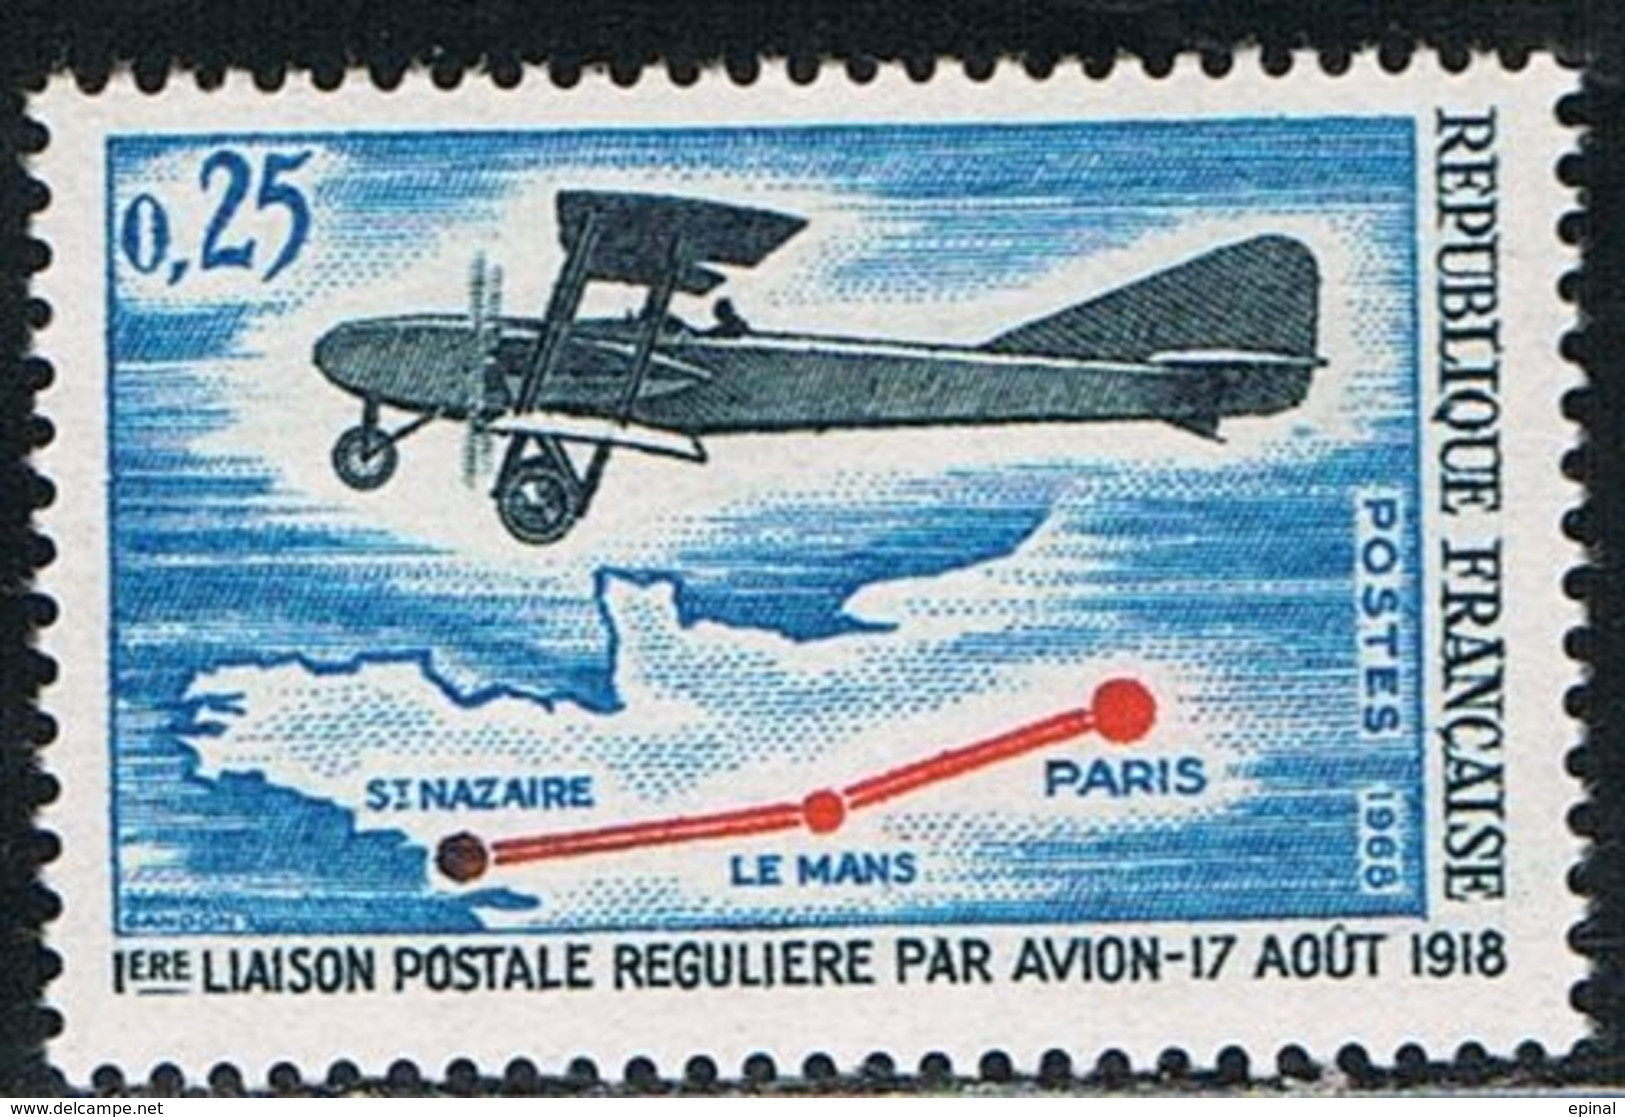 FRANCE : N° 1565 ** (1ère Liaison Postale Régulière Par Avion) - PRIX FIXE - - Ungebraucht